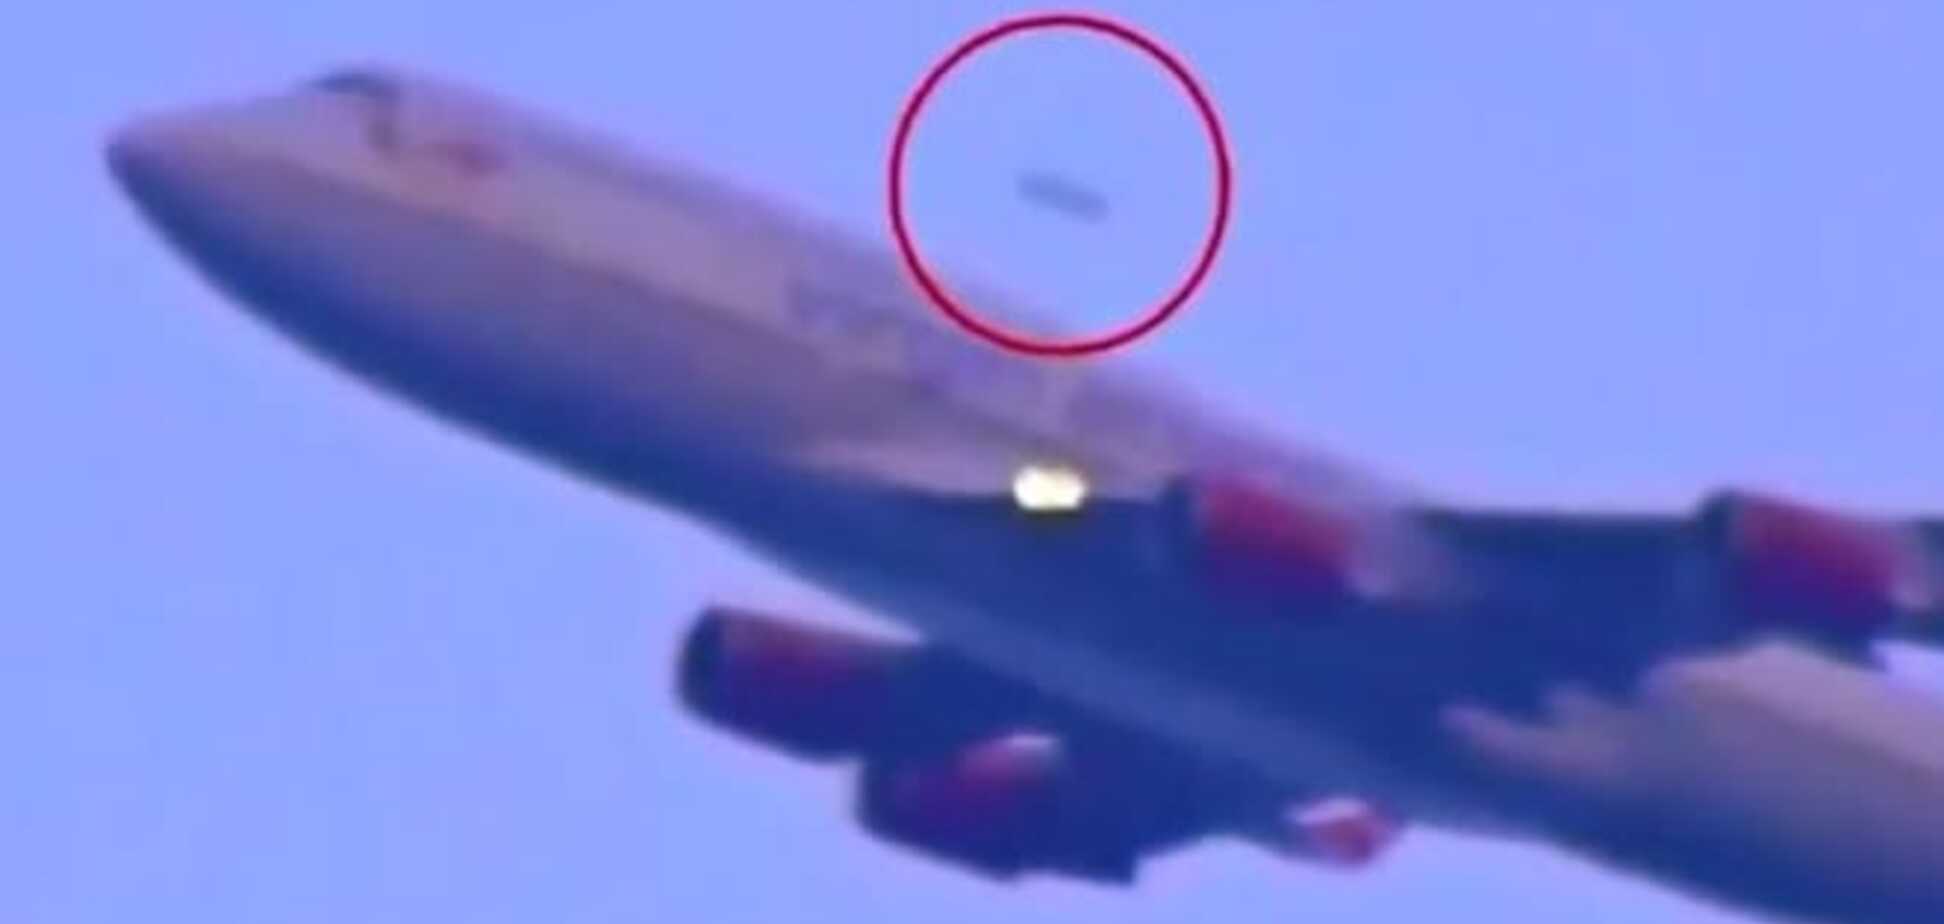 У США спритне НЛО налякало пасажирів аеропорту: відеофакт